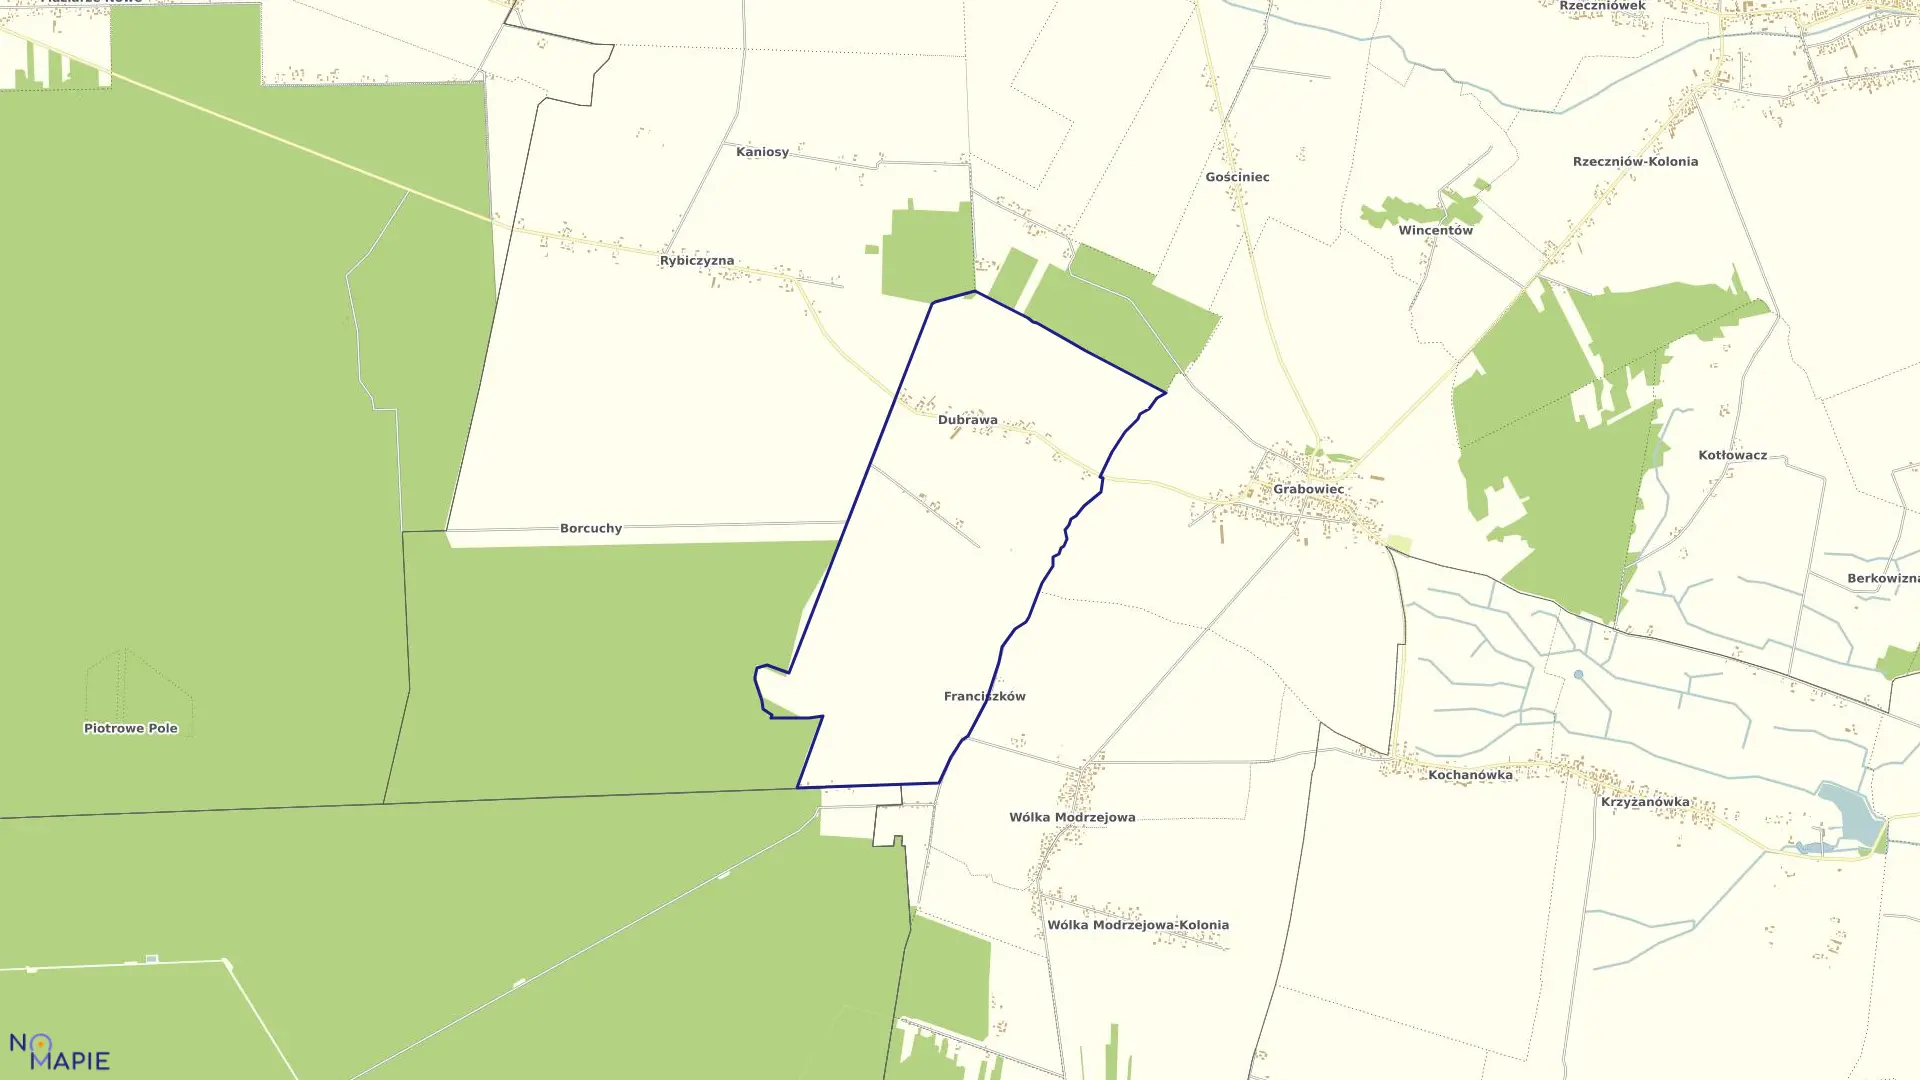 Mapa obrębu DUBRAWA w gminie Rzeczniów